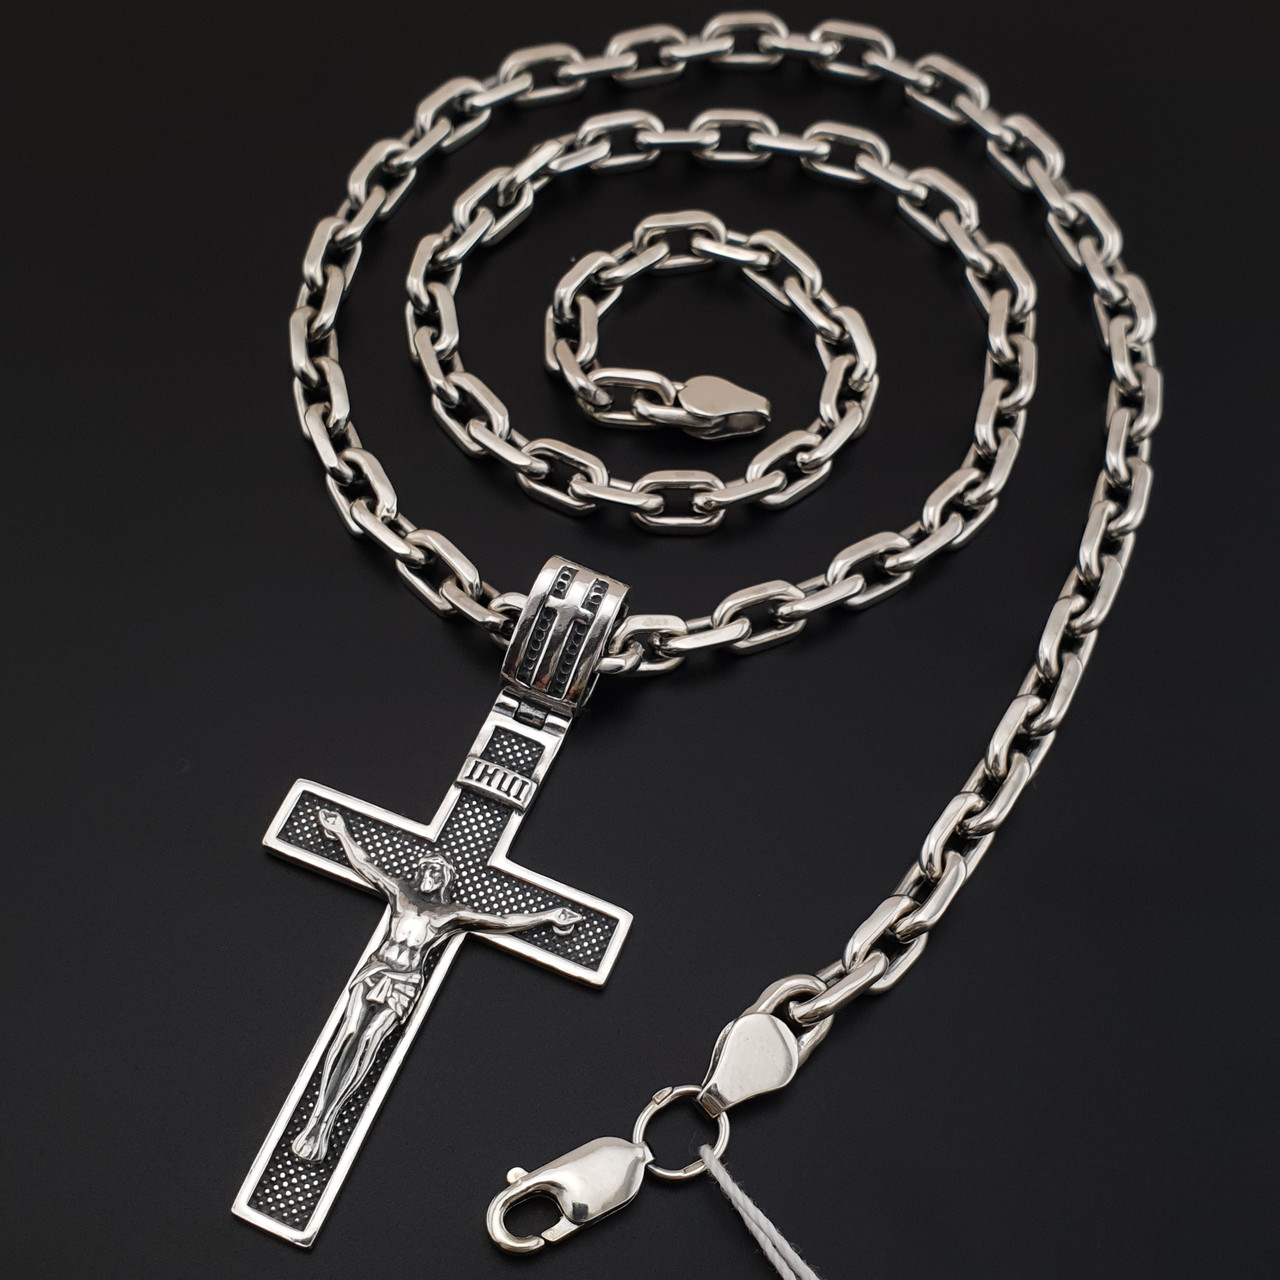 Товста срібна цепочка чоловіча з хрестиком. Якірний ланцюг і освячений кулон хрест срібло 925. Довжина 55 см